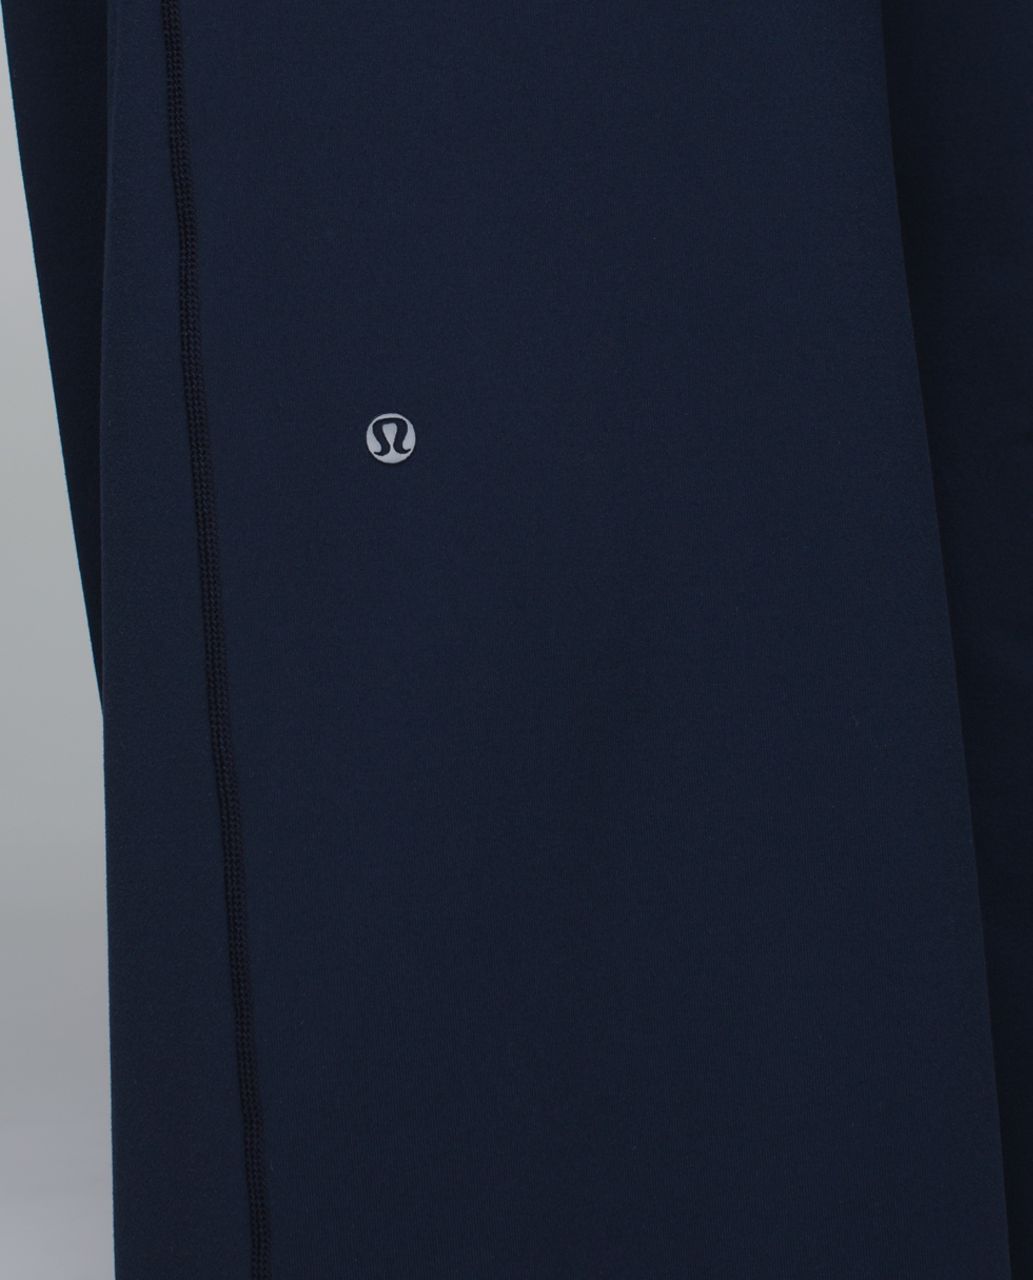 Lululemon Forward Fold Trouser *Full-On Luon - Inkwell